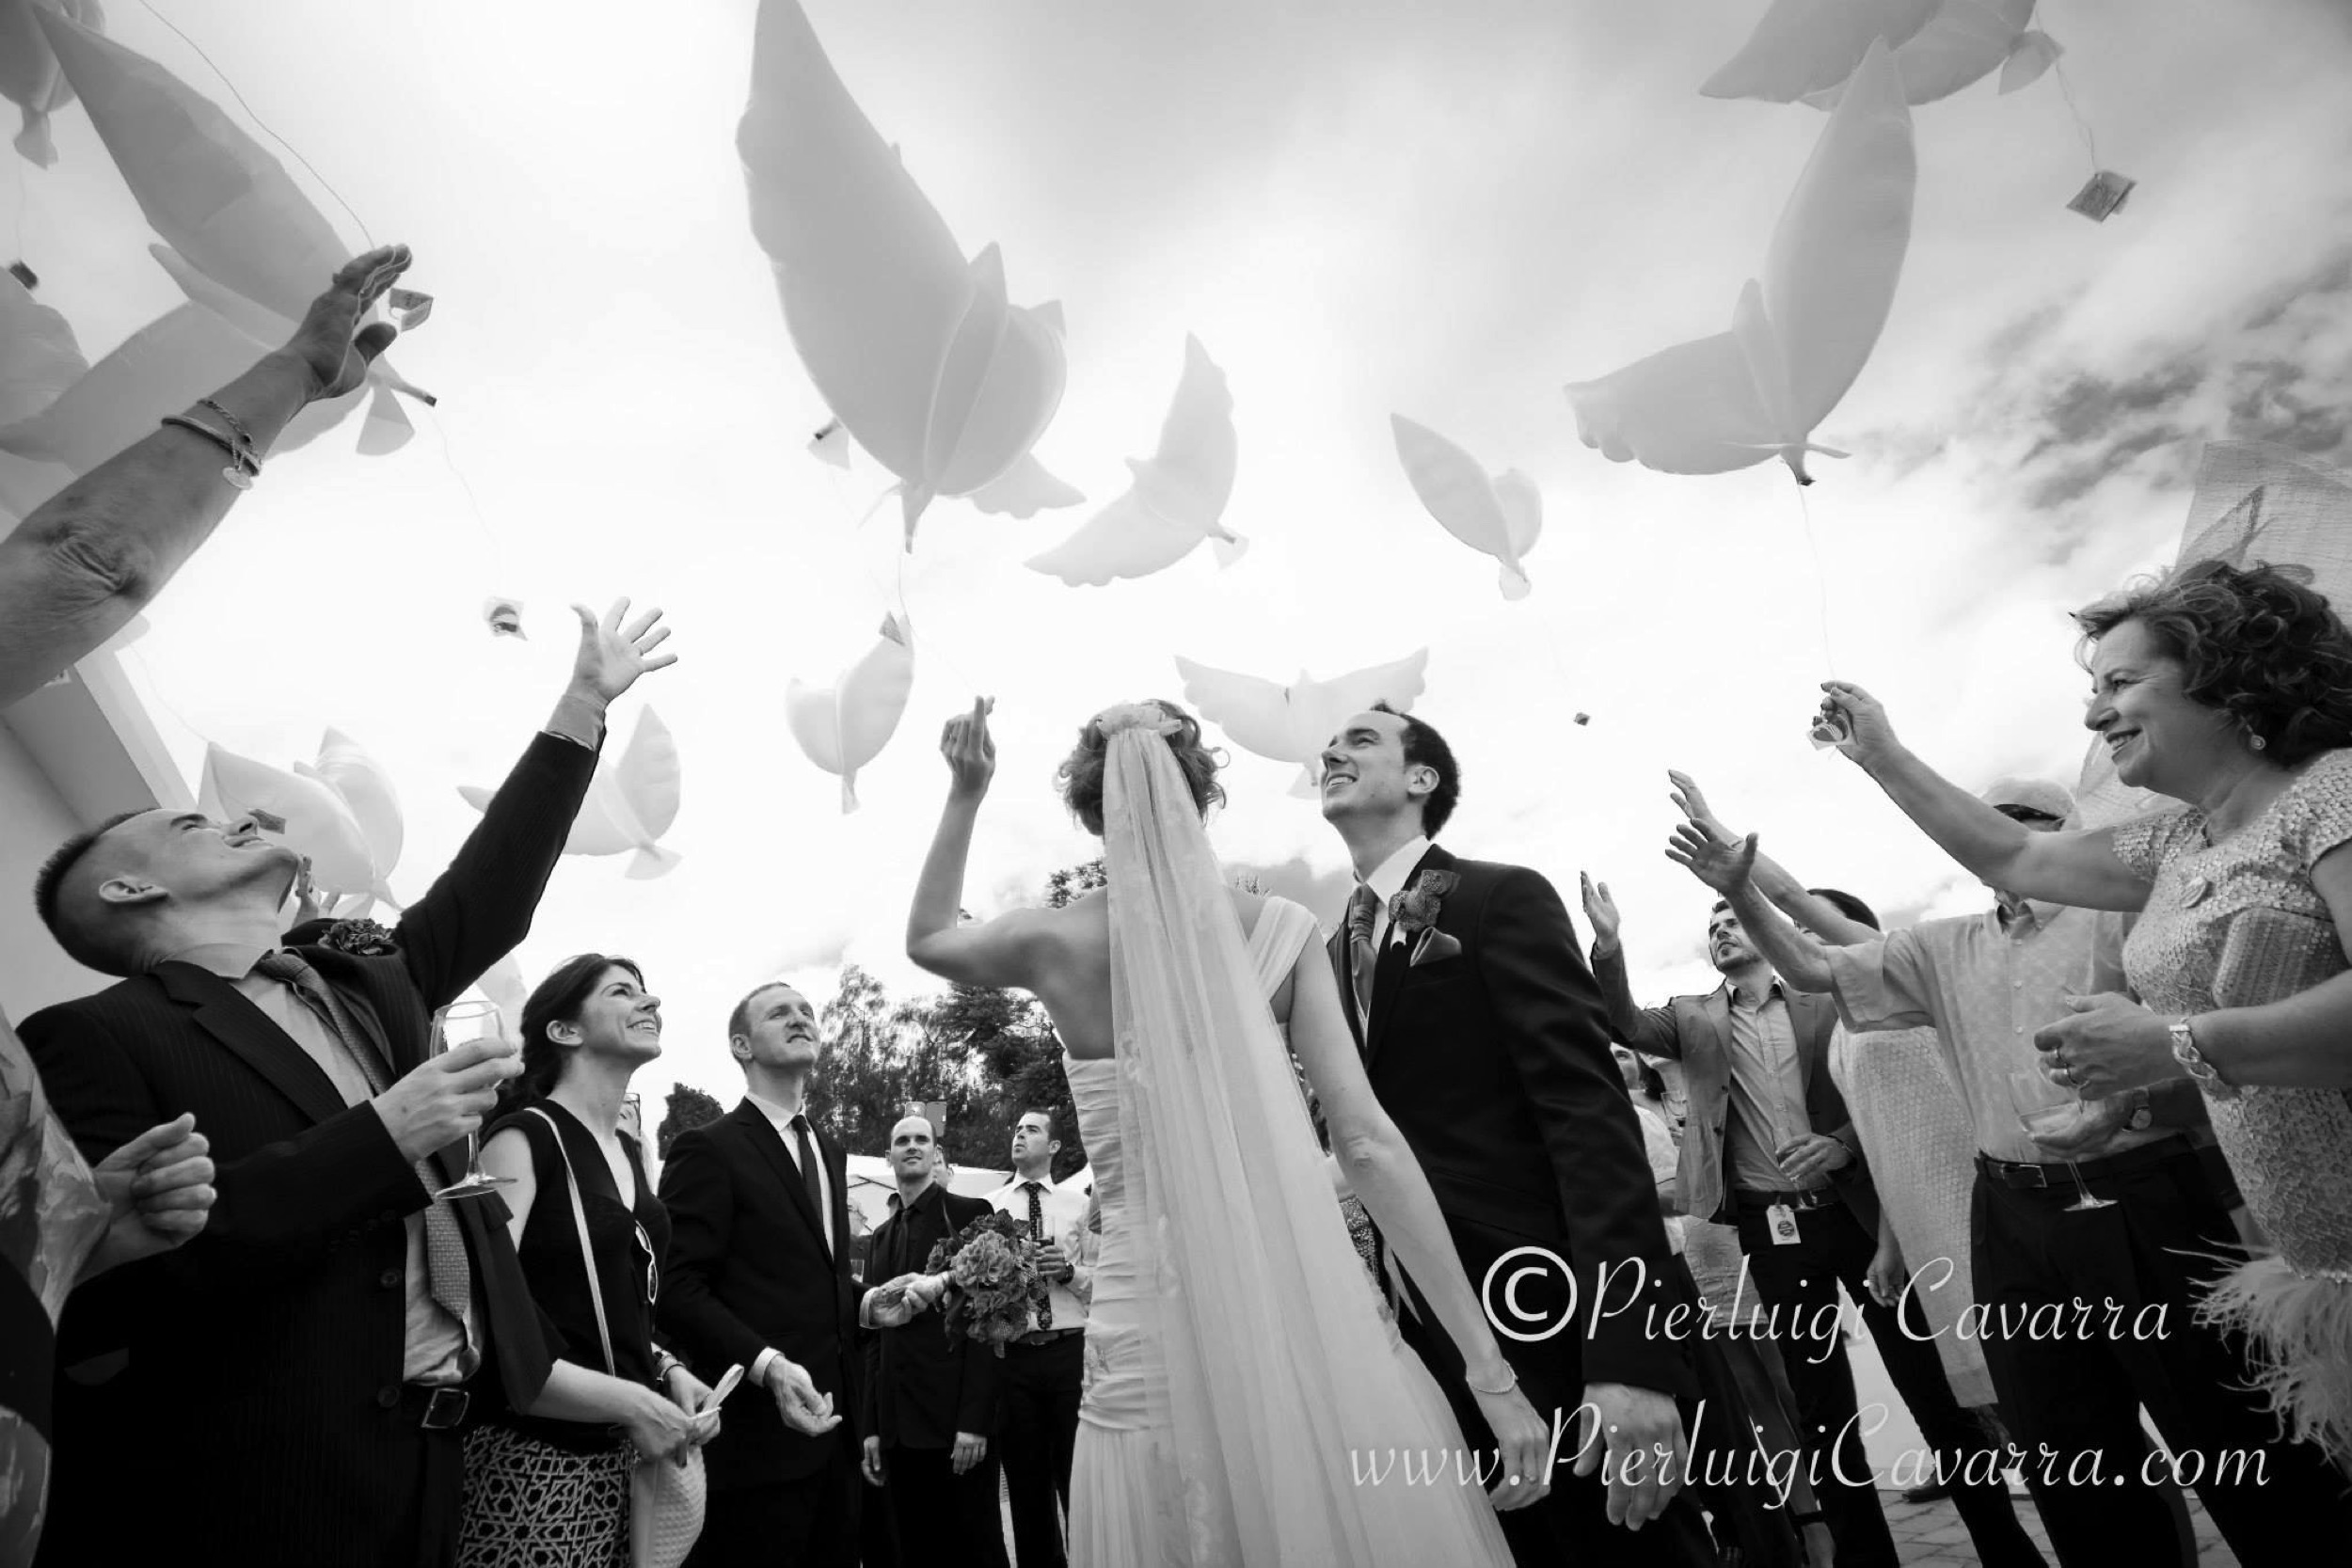 Pierluigi Cavarra - fotografo de bodas y eventos - wedding photographer costa blanca - ejemplo -28